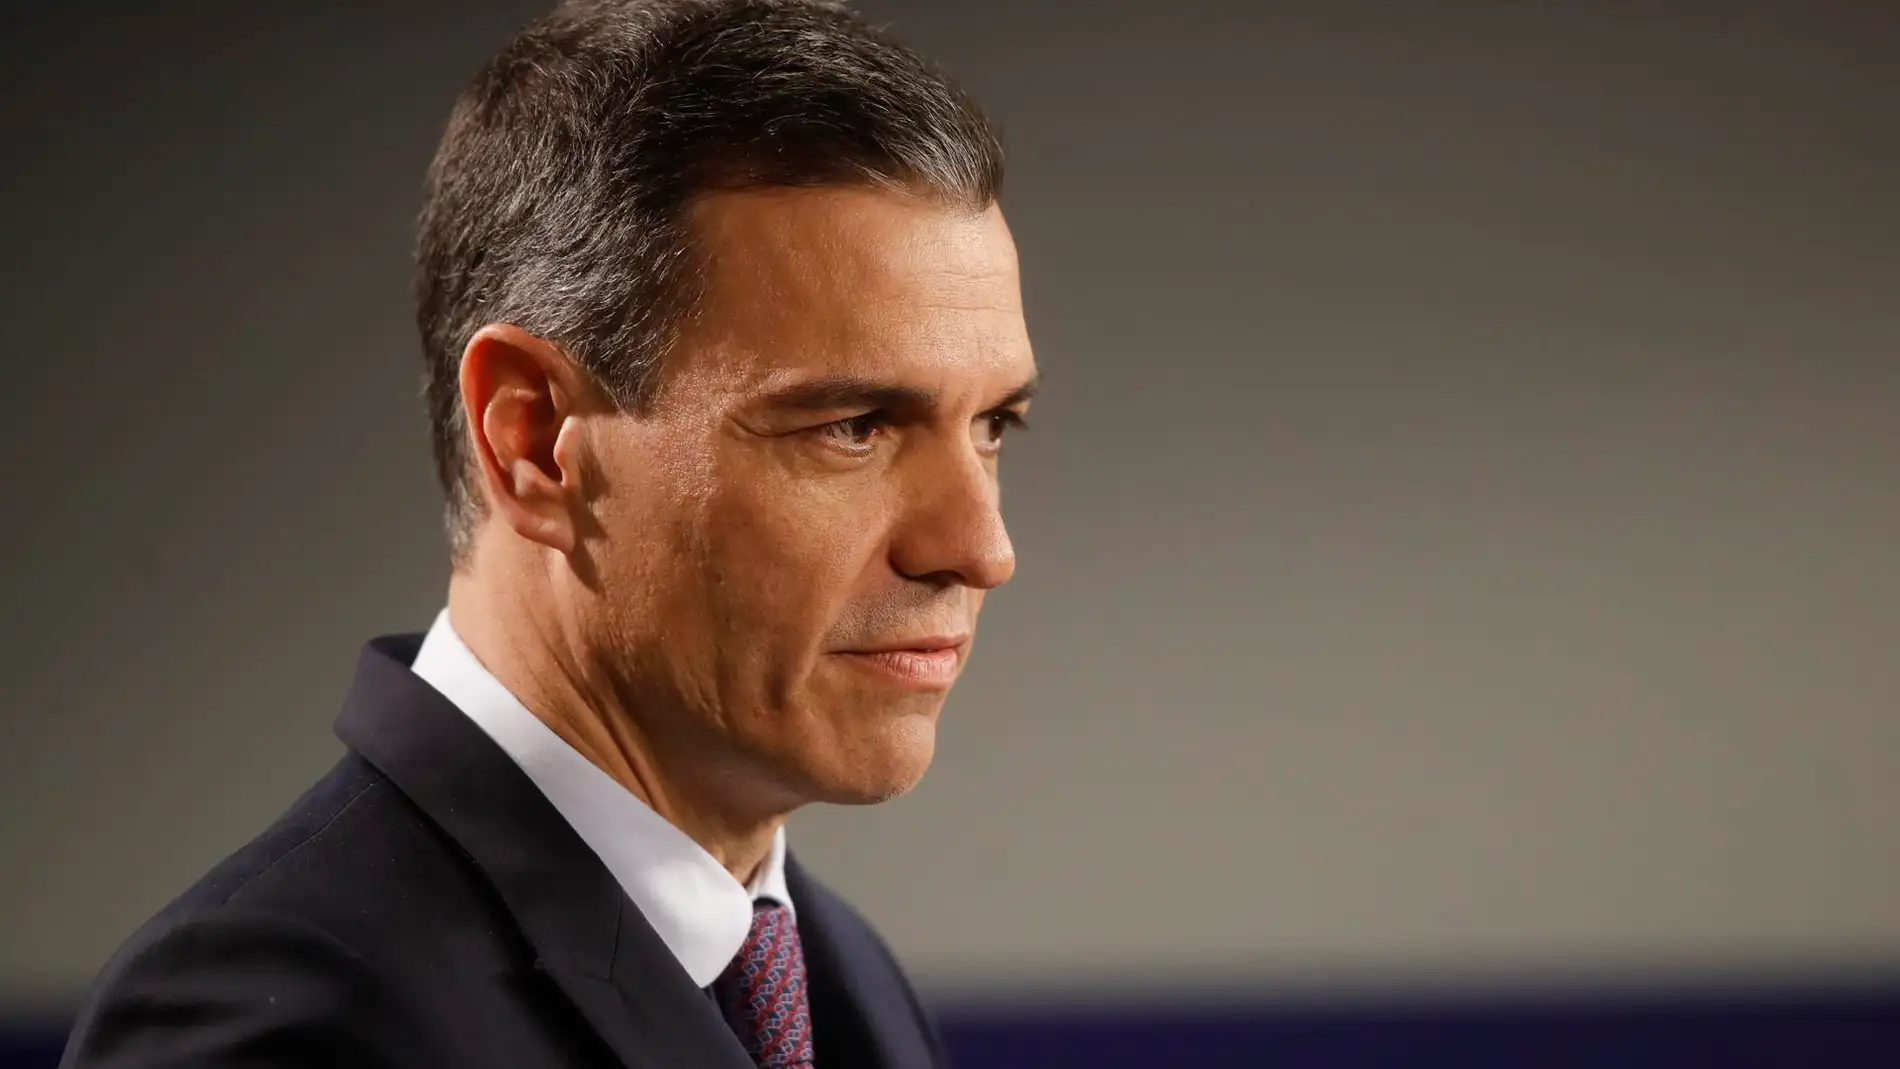 Pedro Sánchez descarta una crisis en el Gobierno de coalición a cuenta de la 'sólo sí es sí'